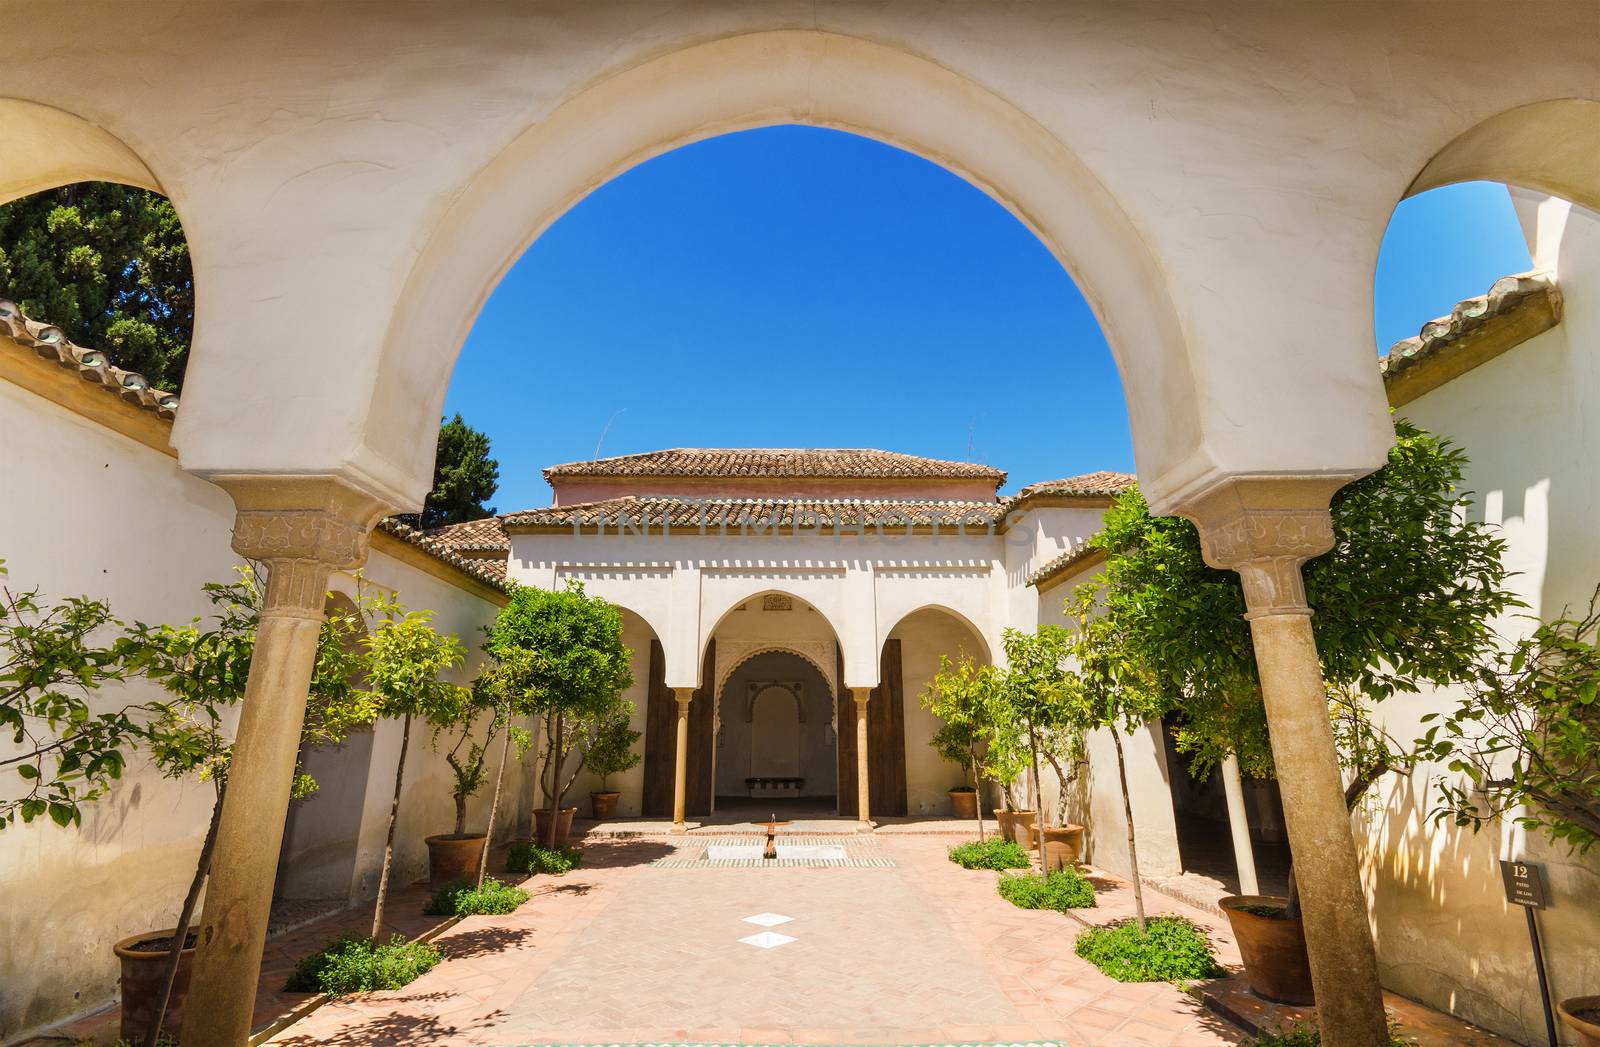 Courtyard garden in Alcazaba Palace, Malaga, Andalusia, Spain.